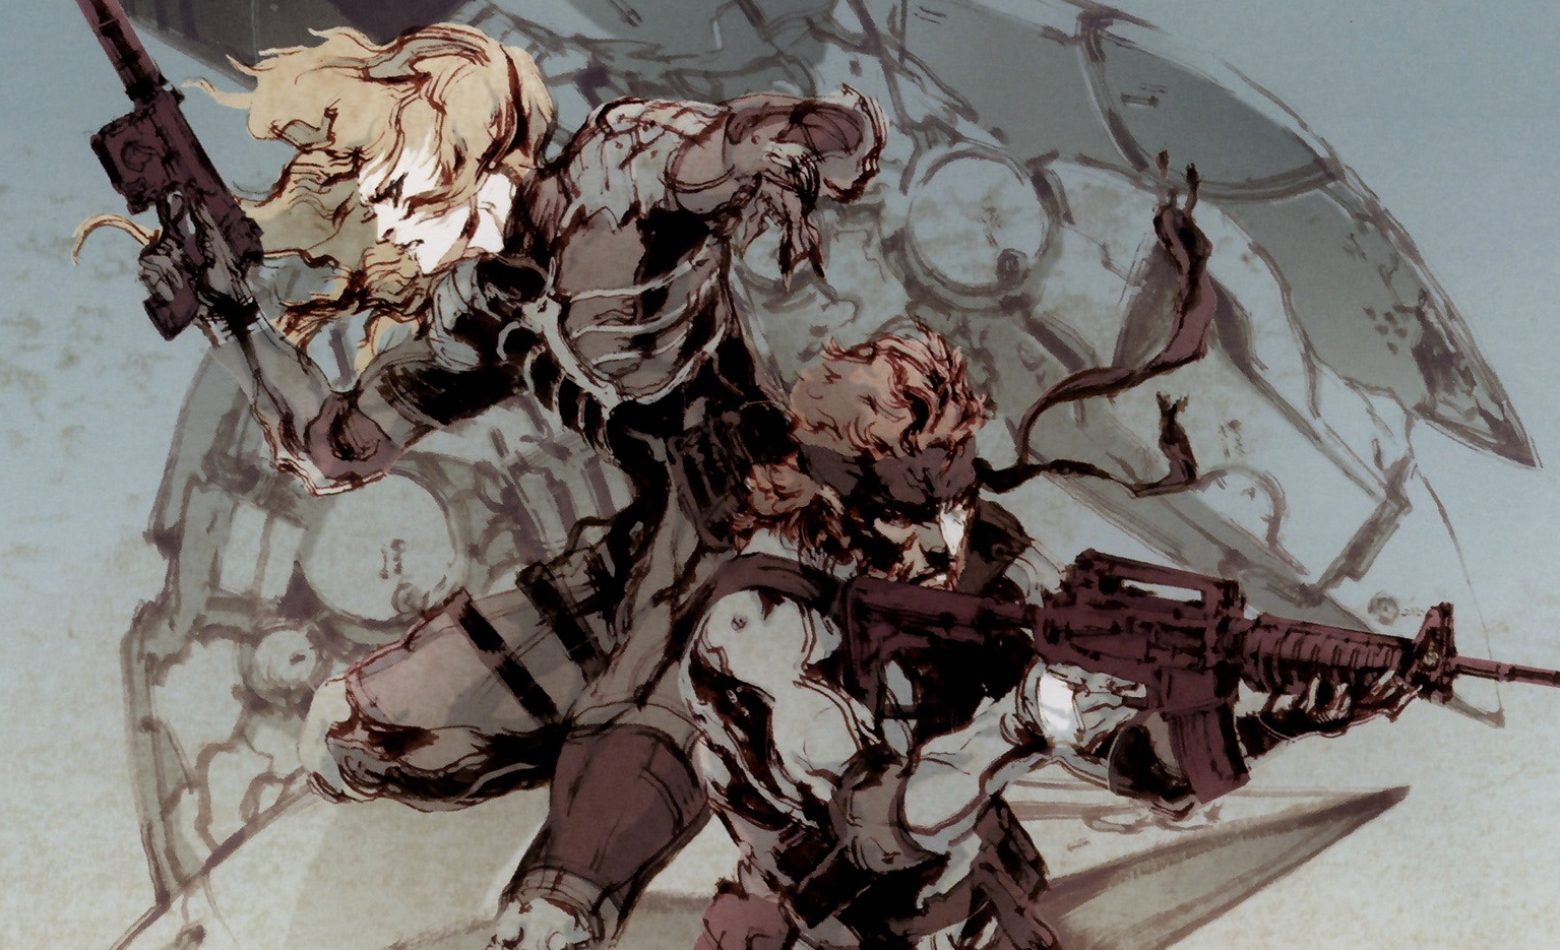 Gameplay: começa a saga de Raiden em Metal Gear Solid 2